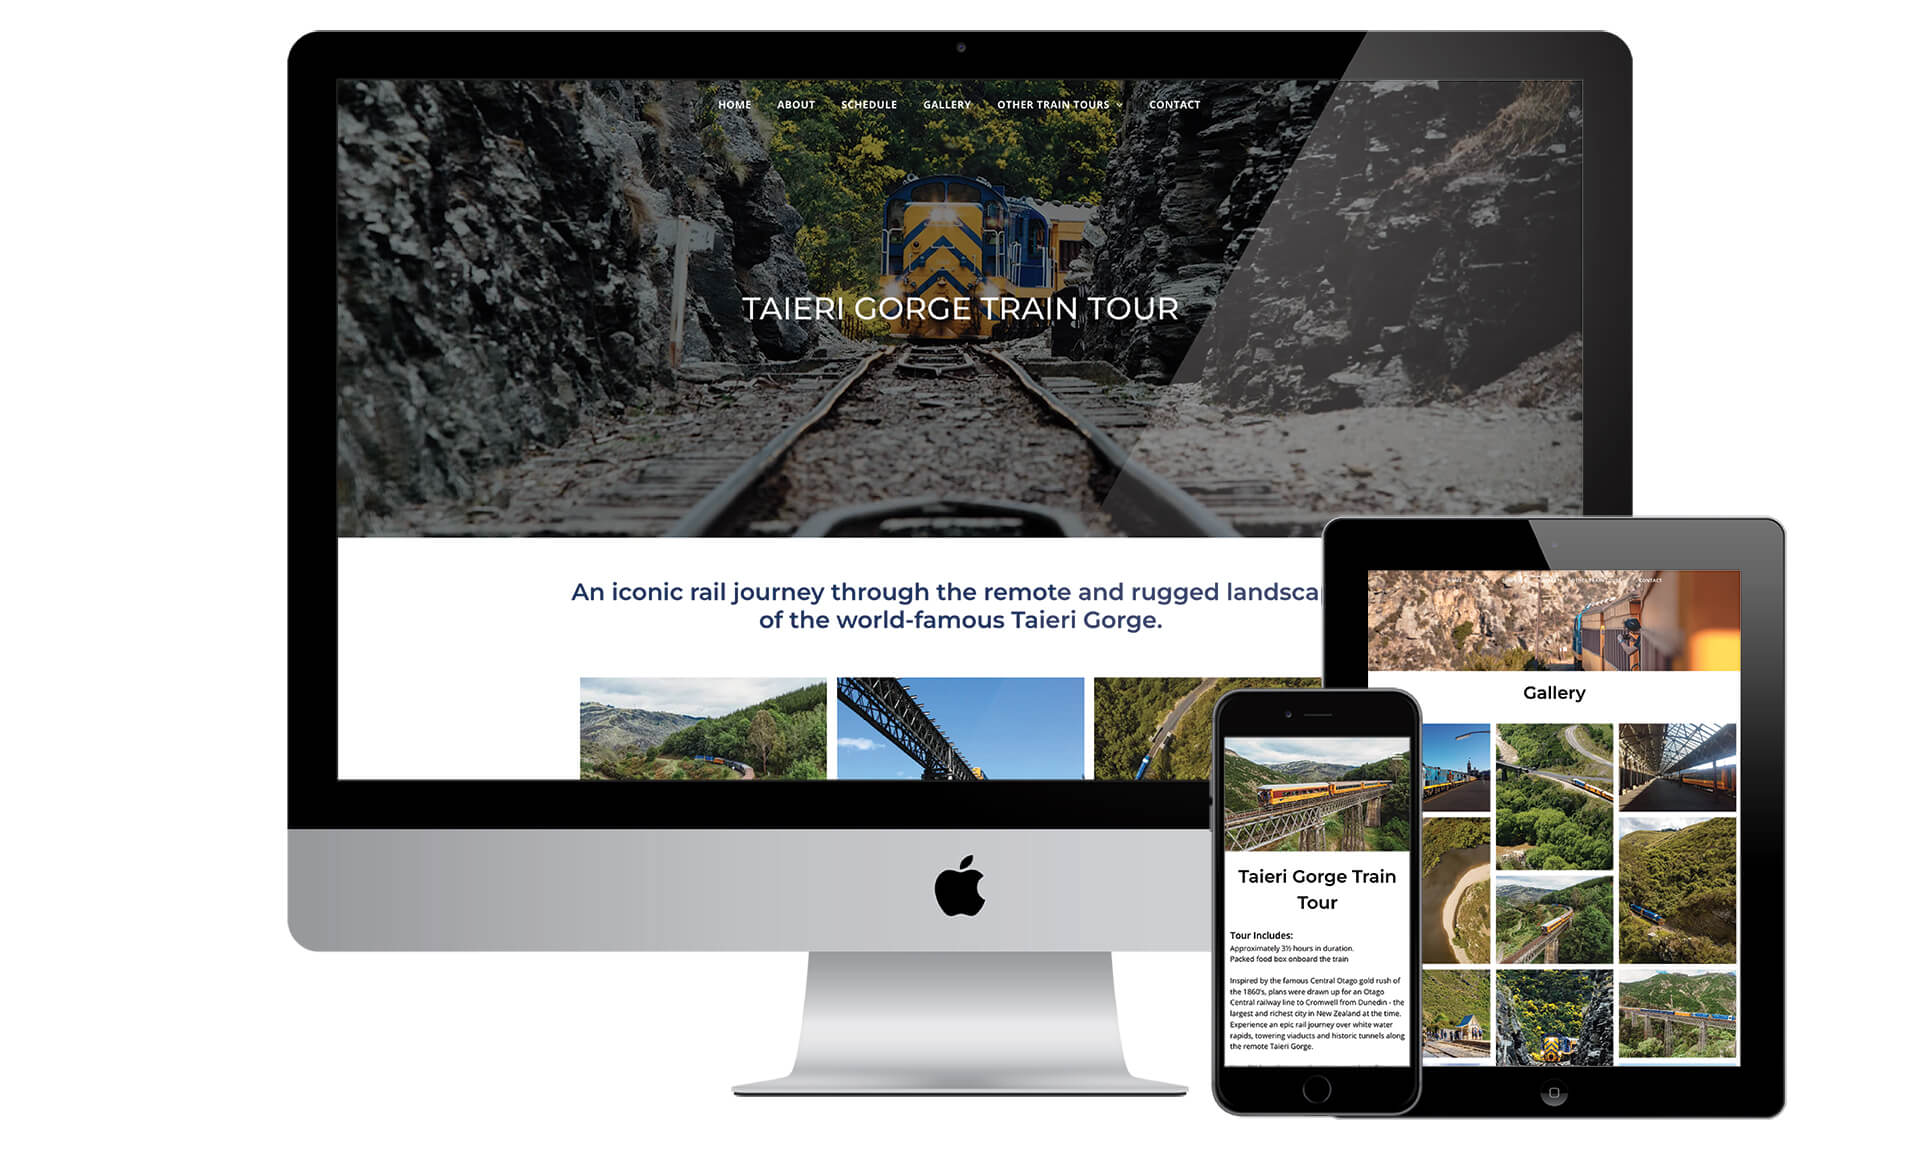 Taieri Gorge Train Tour website designed by Vanilla Hayes creative graphic design  studio in Blenheim, Marlborough, New Zealand